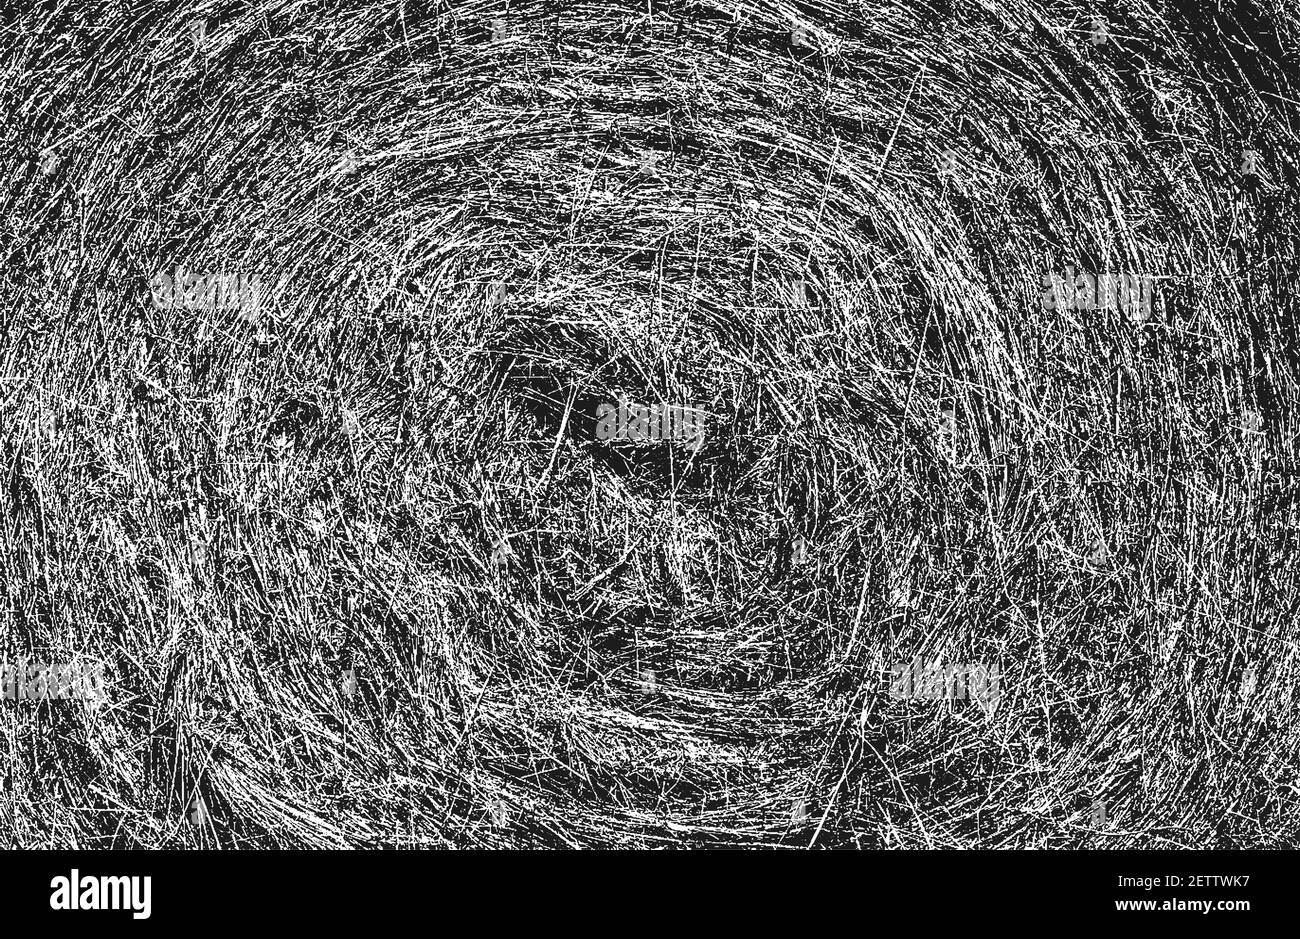 Texture de la tige de l'herbe en relief sur le sol. Grunge fond noir et blanc. Illustration vectorielle abstraite de demi-teinte Illustration de Vecteur